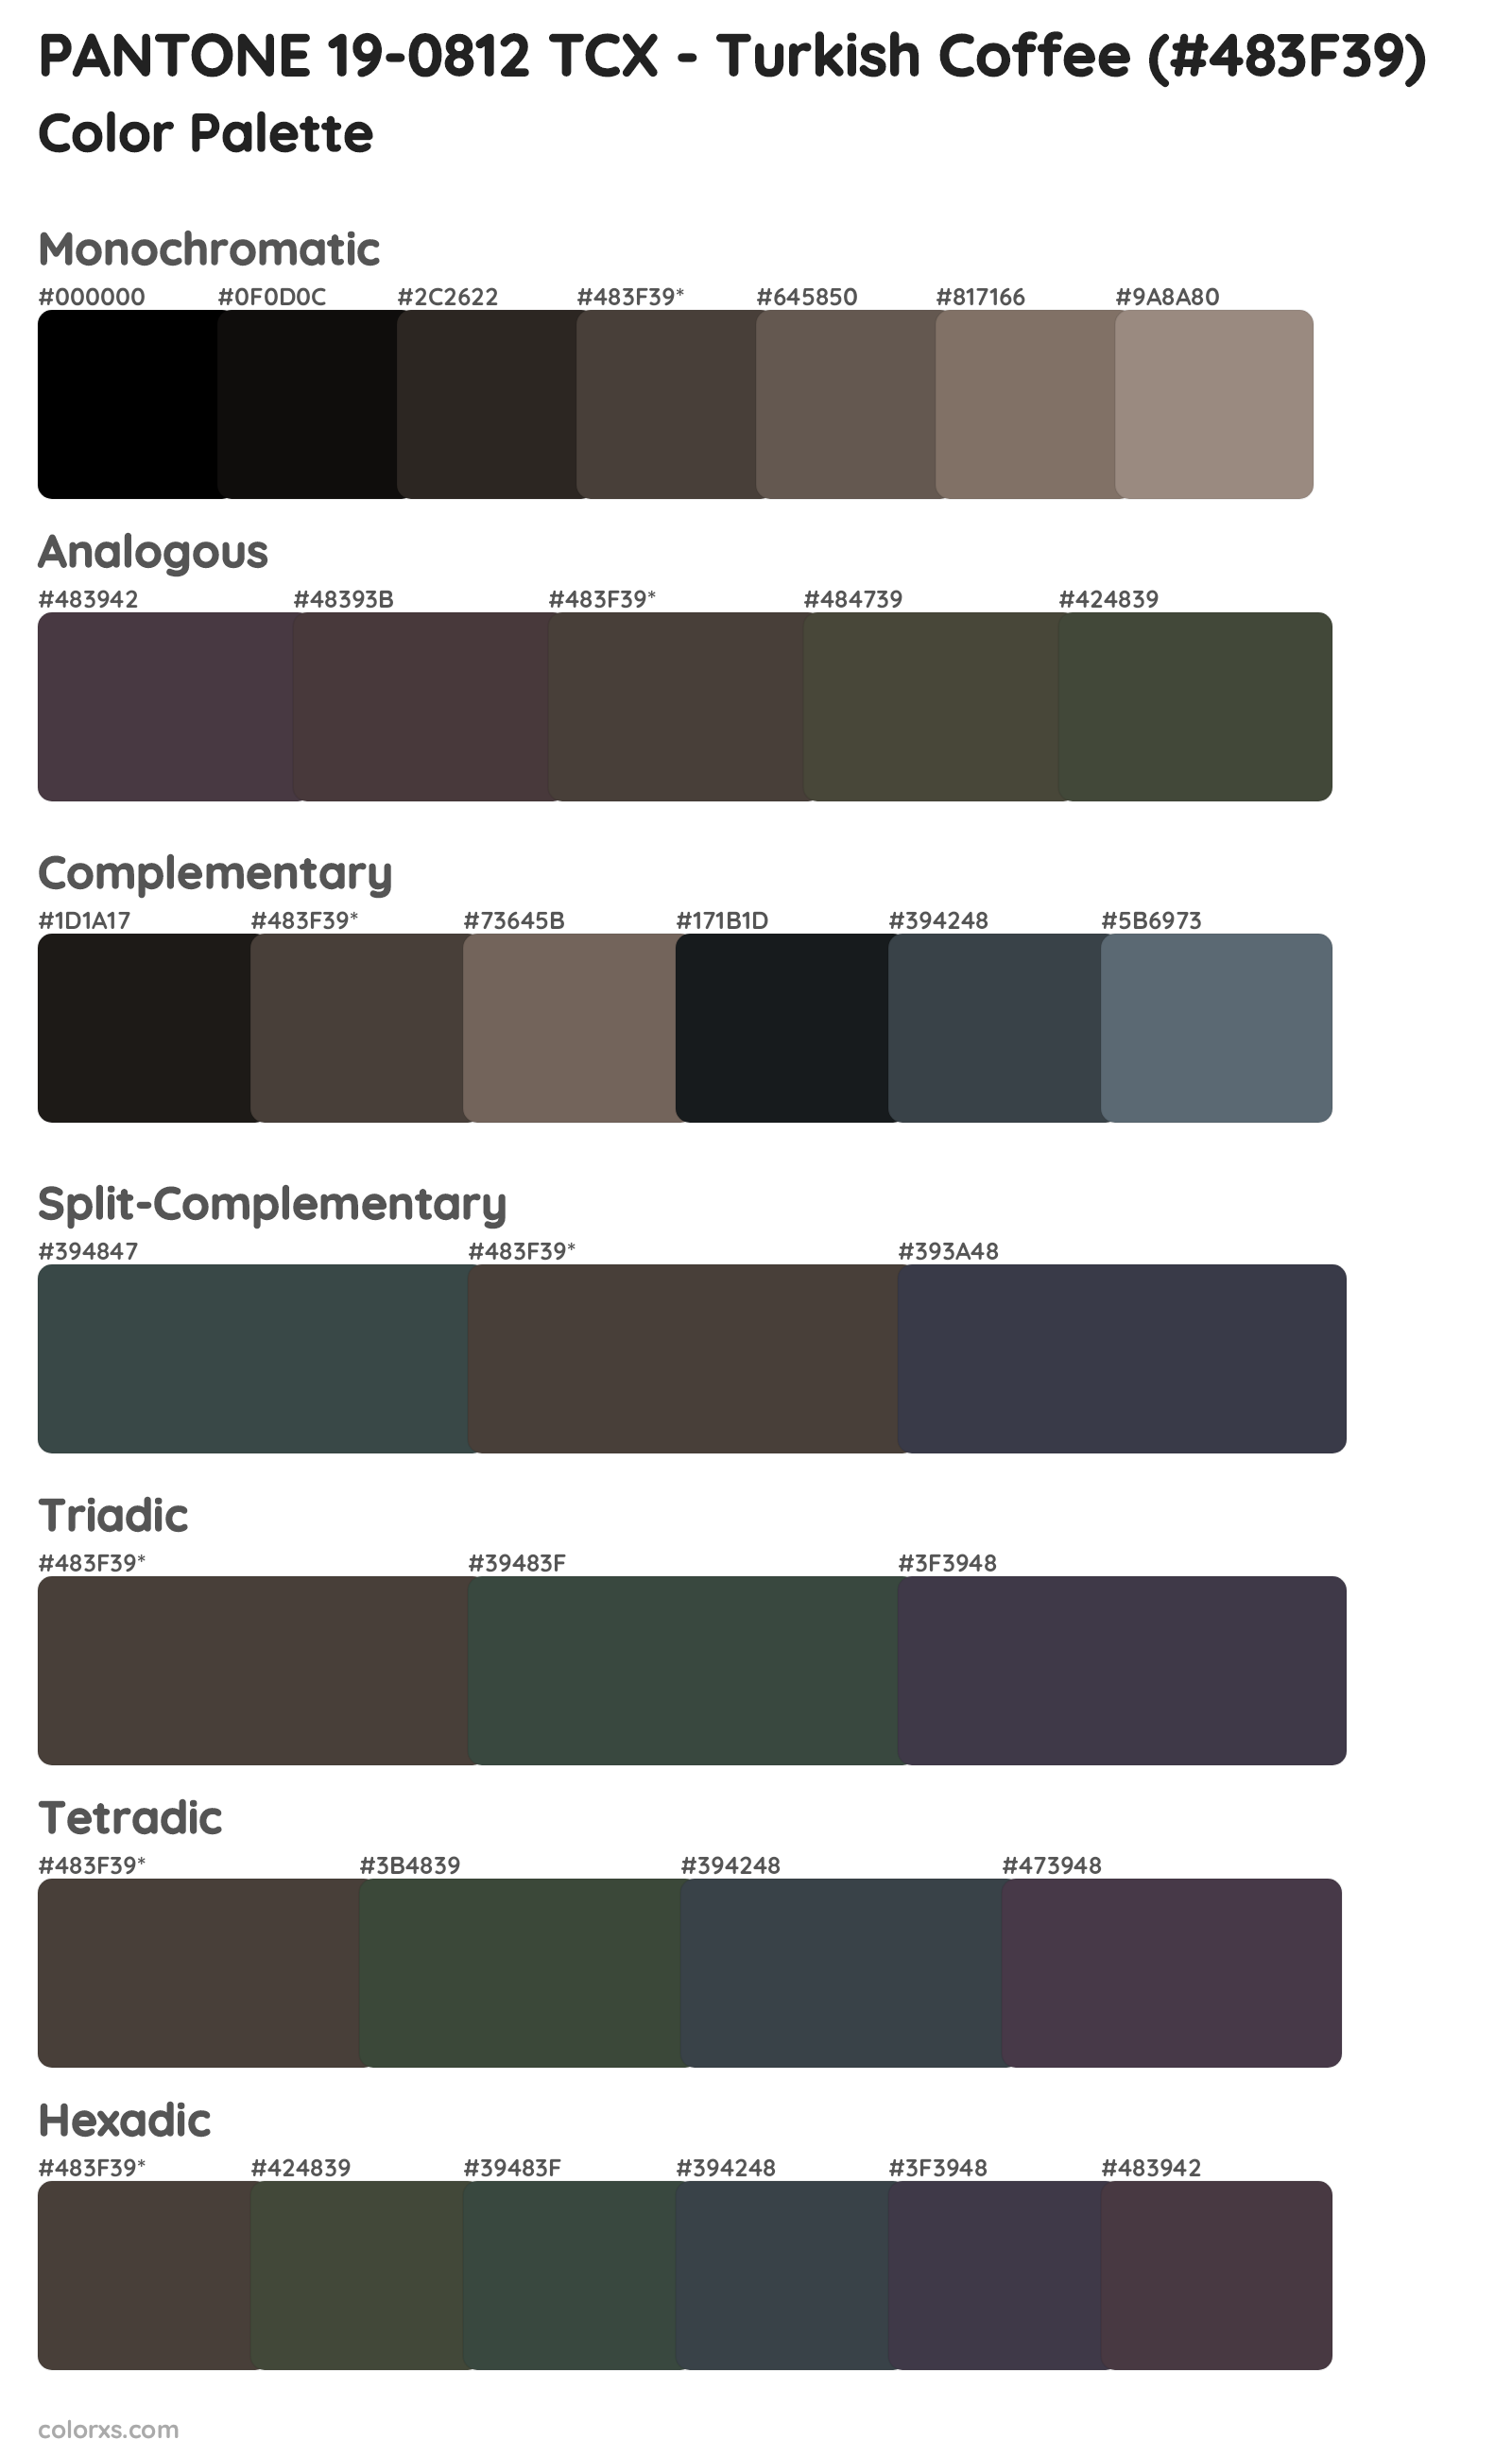 PANTONE 19-0812 TCX - Turkish Coffee Color Scheme Palettes